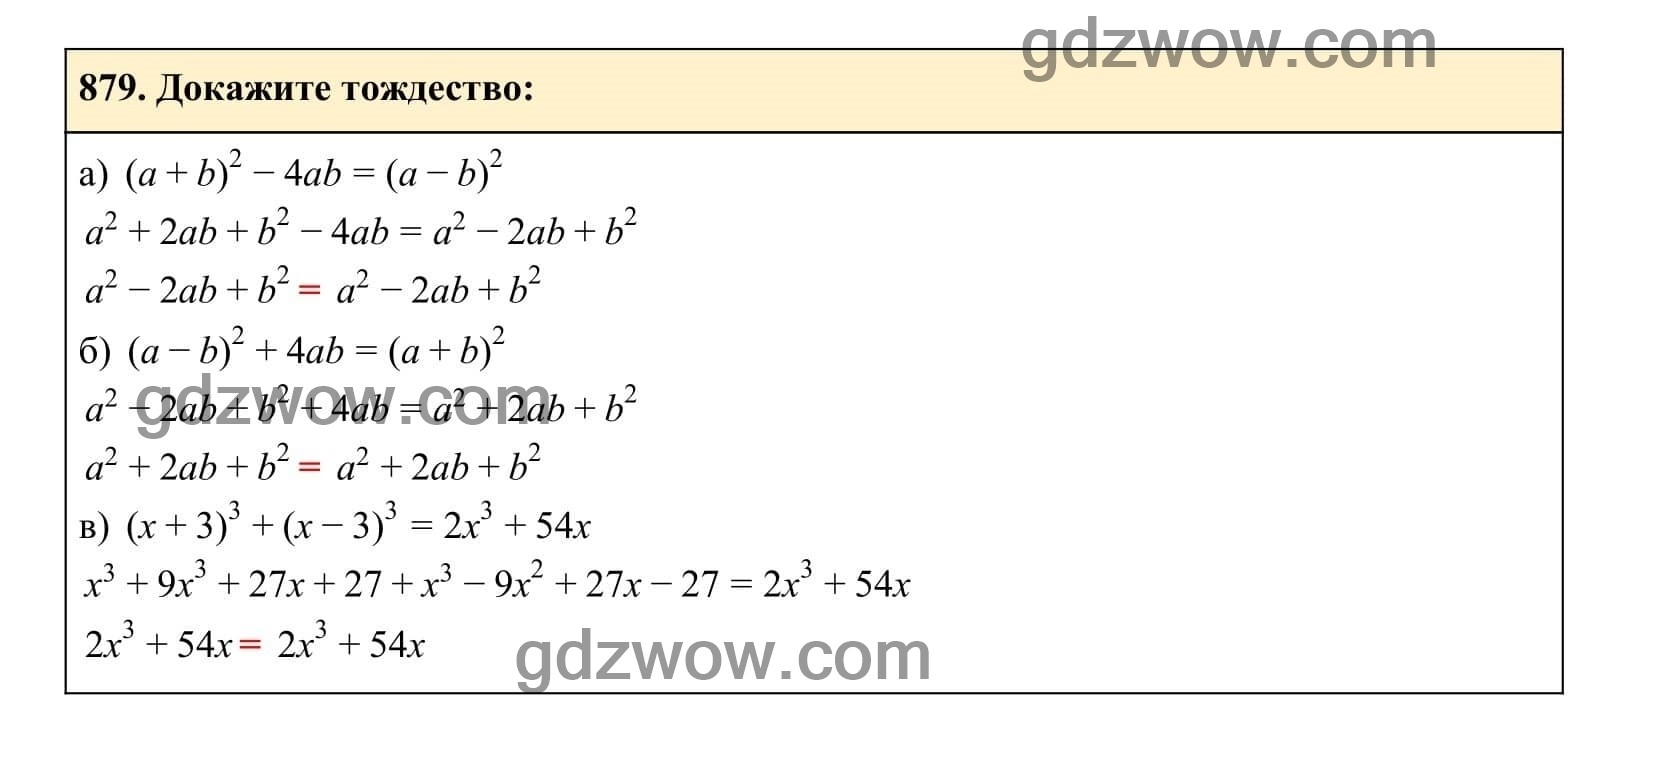 Упражнение 879 - ГДЗ по Алгебре 7 класс Учебник Макарычев (решебник) - GDZwow